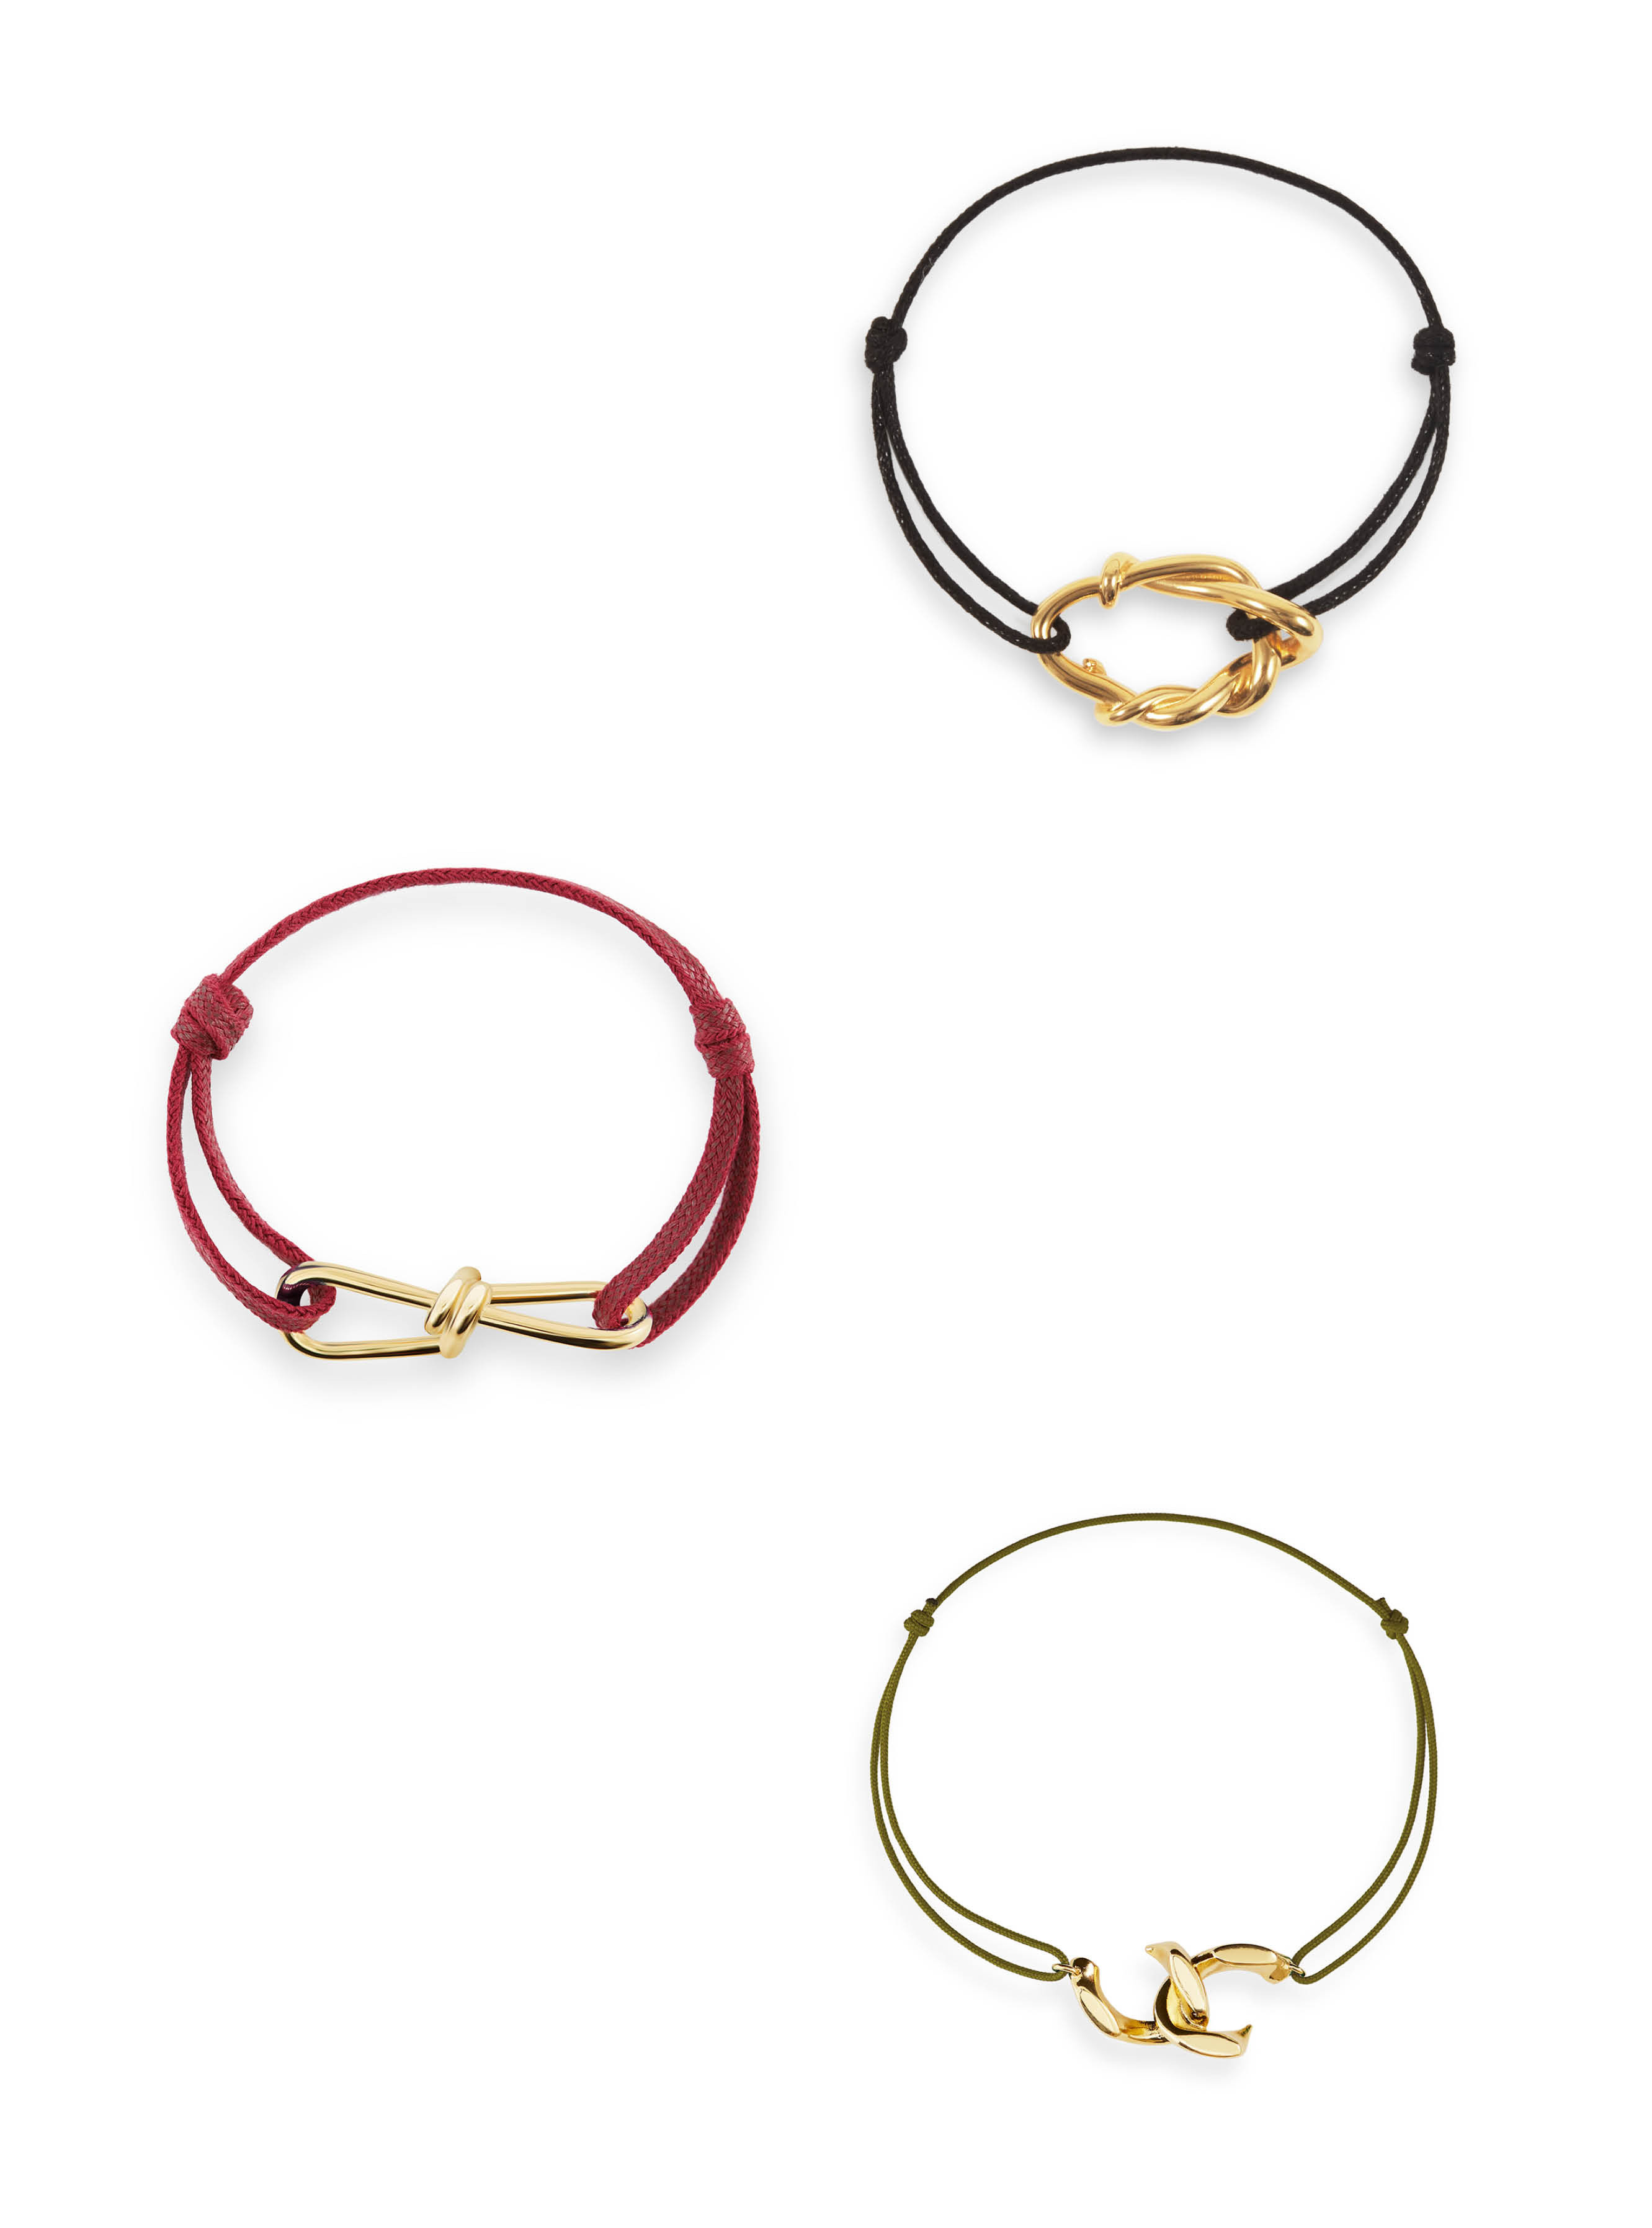 Cord bracelets